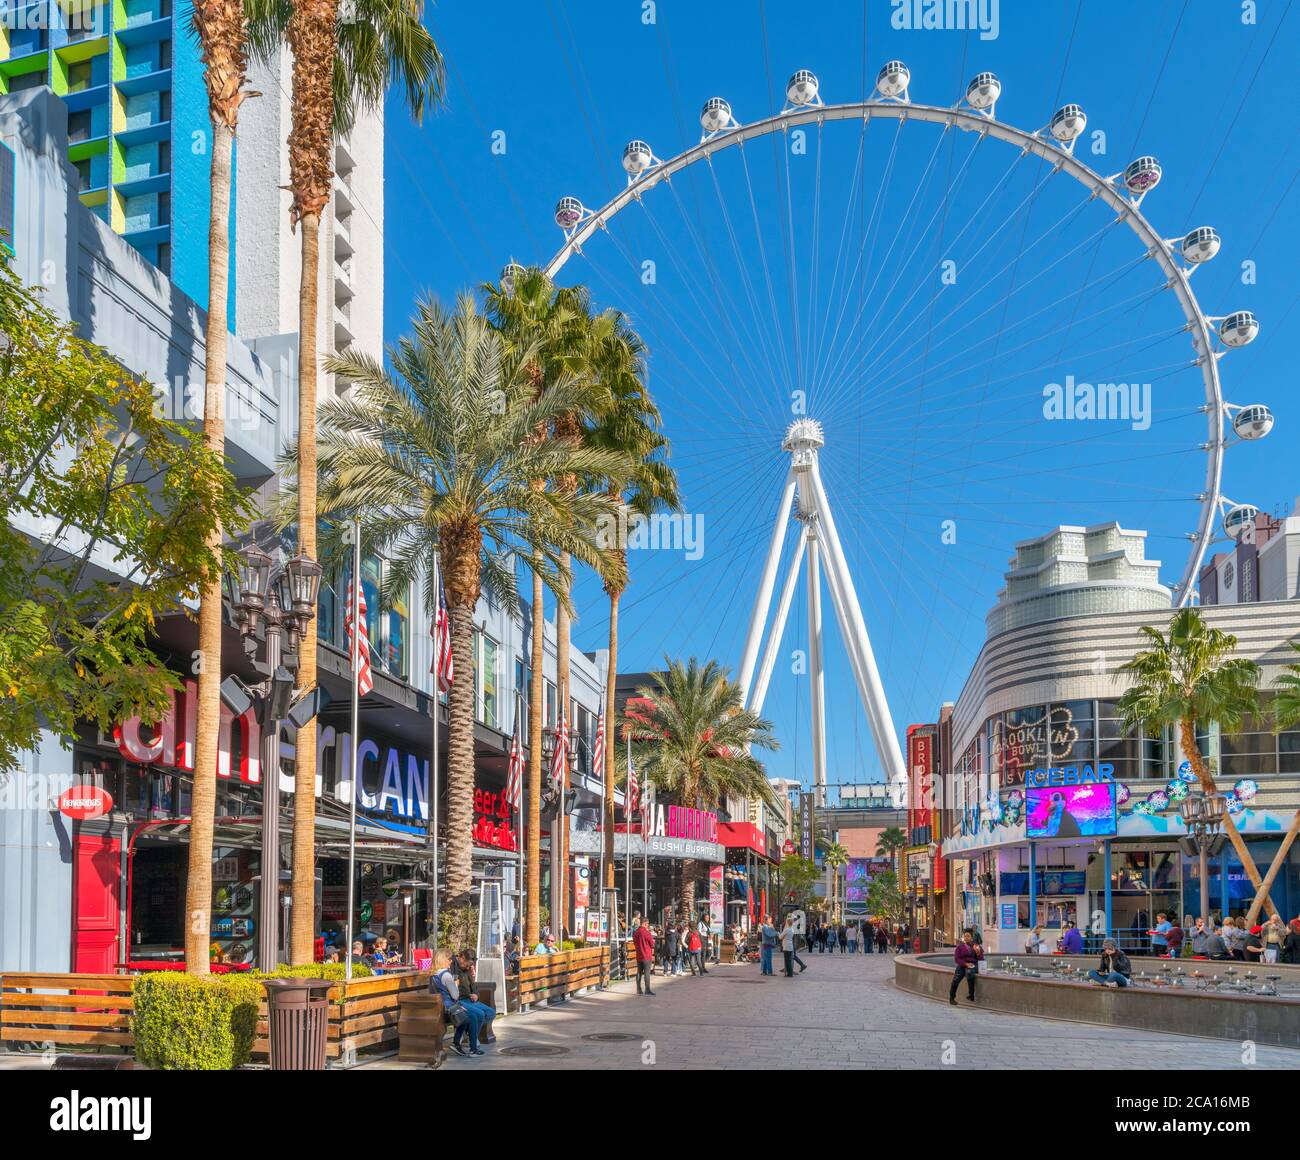 High Roller, Las Vegas. Boutiques, bars et restaurants sur la promenade LINQ en direction de la grande roue de train High Roller, Las Vegas, Nevada, Etats-Unis Banque D'Images